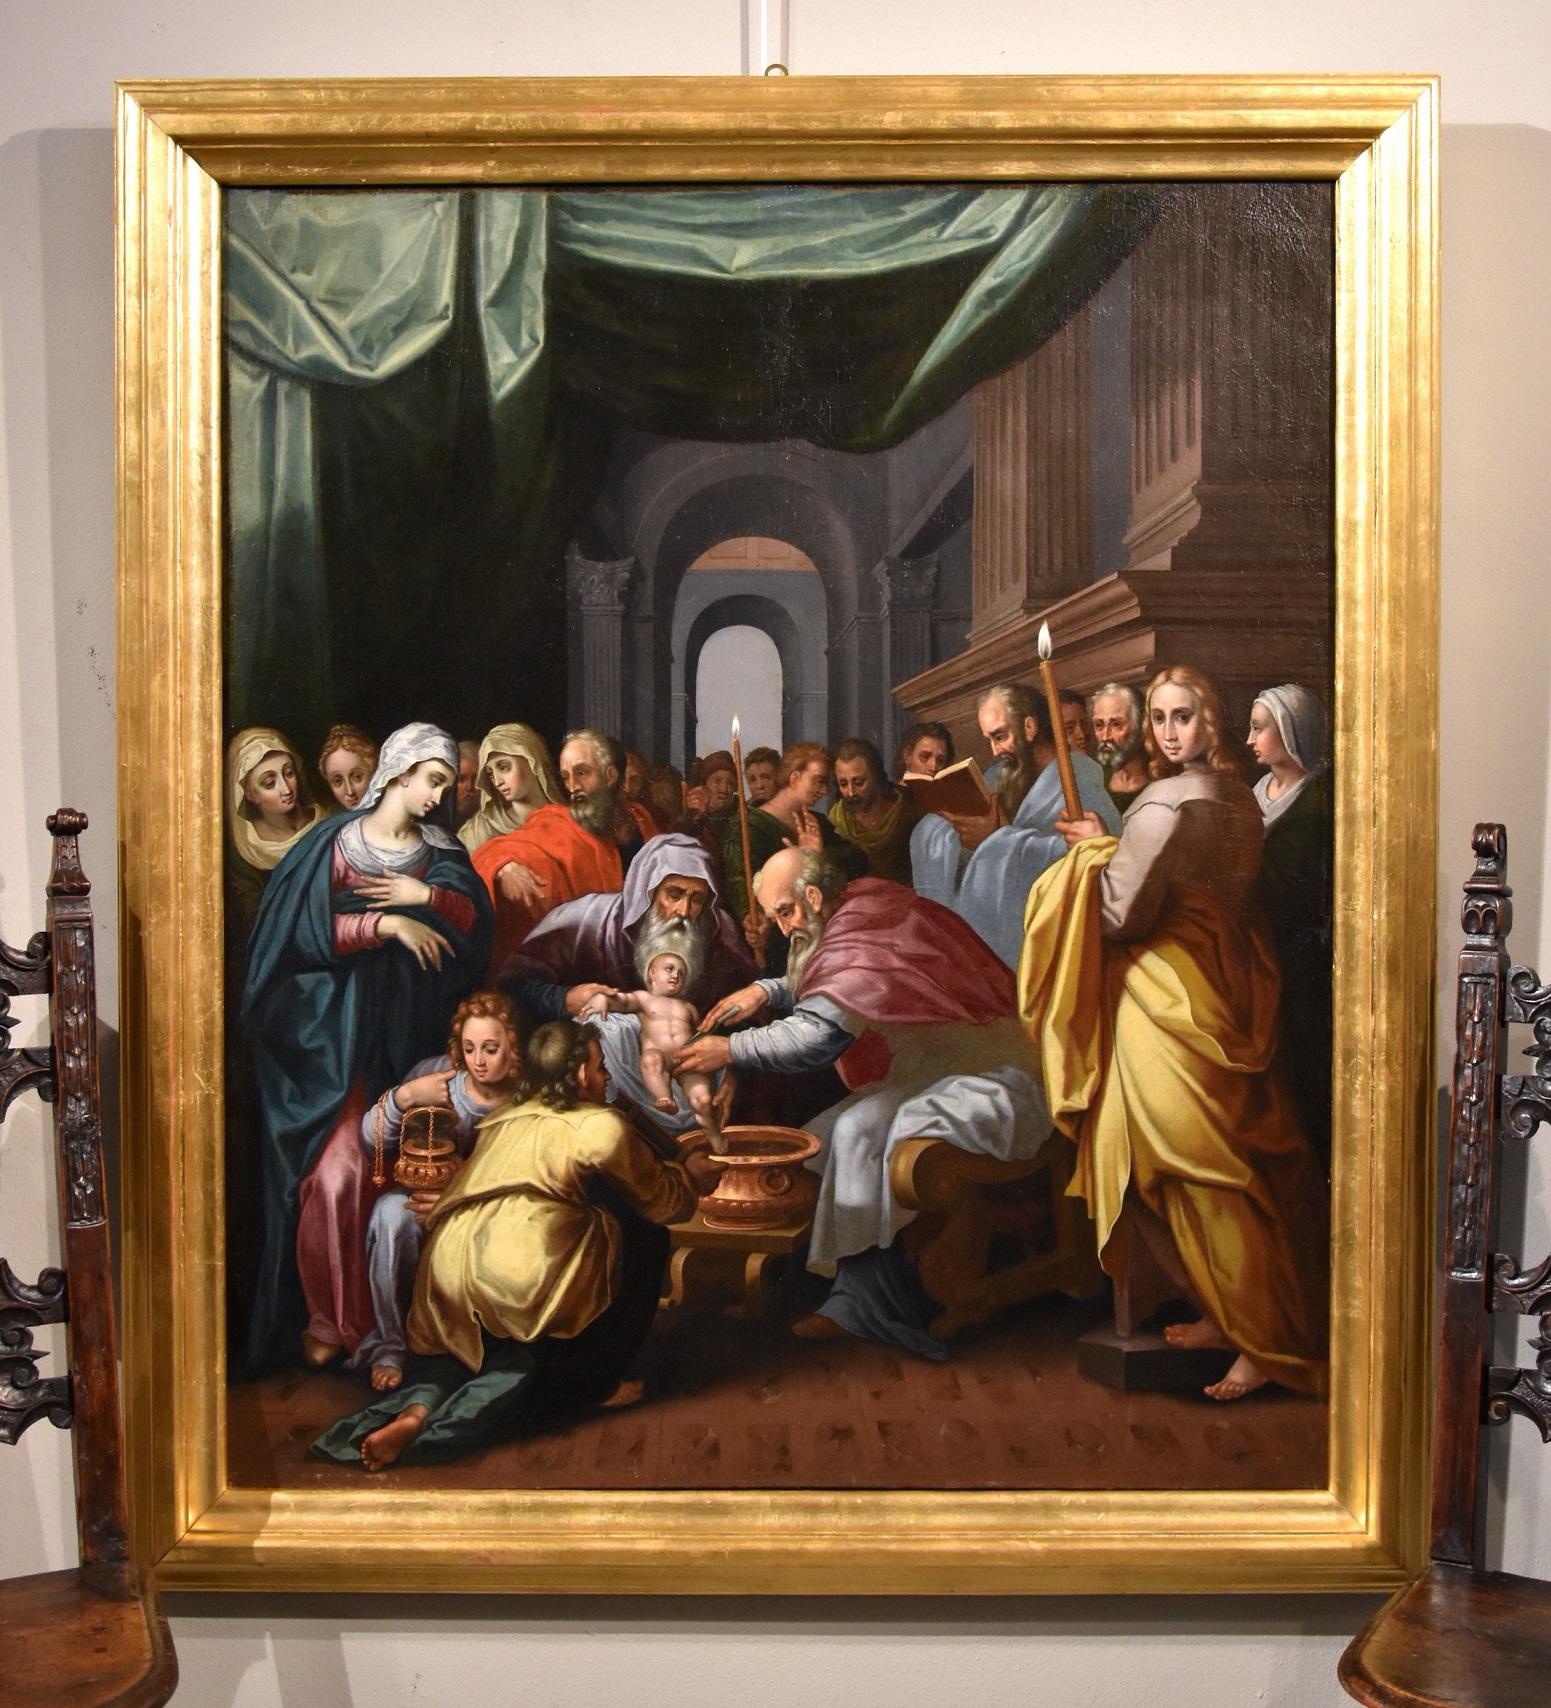 Circoncision Christ Lairly Peinture Flemish Huile sur toile Vieux maître 17ème siècle - Painting de Gérard de Lairesse (Liège 1641 - Amsterdam 1711)